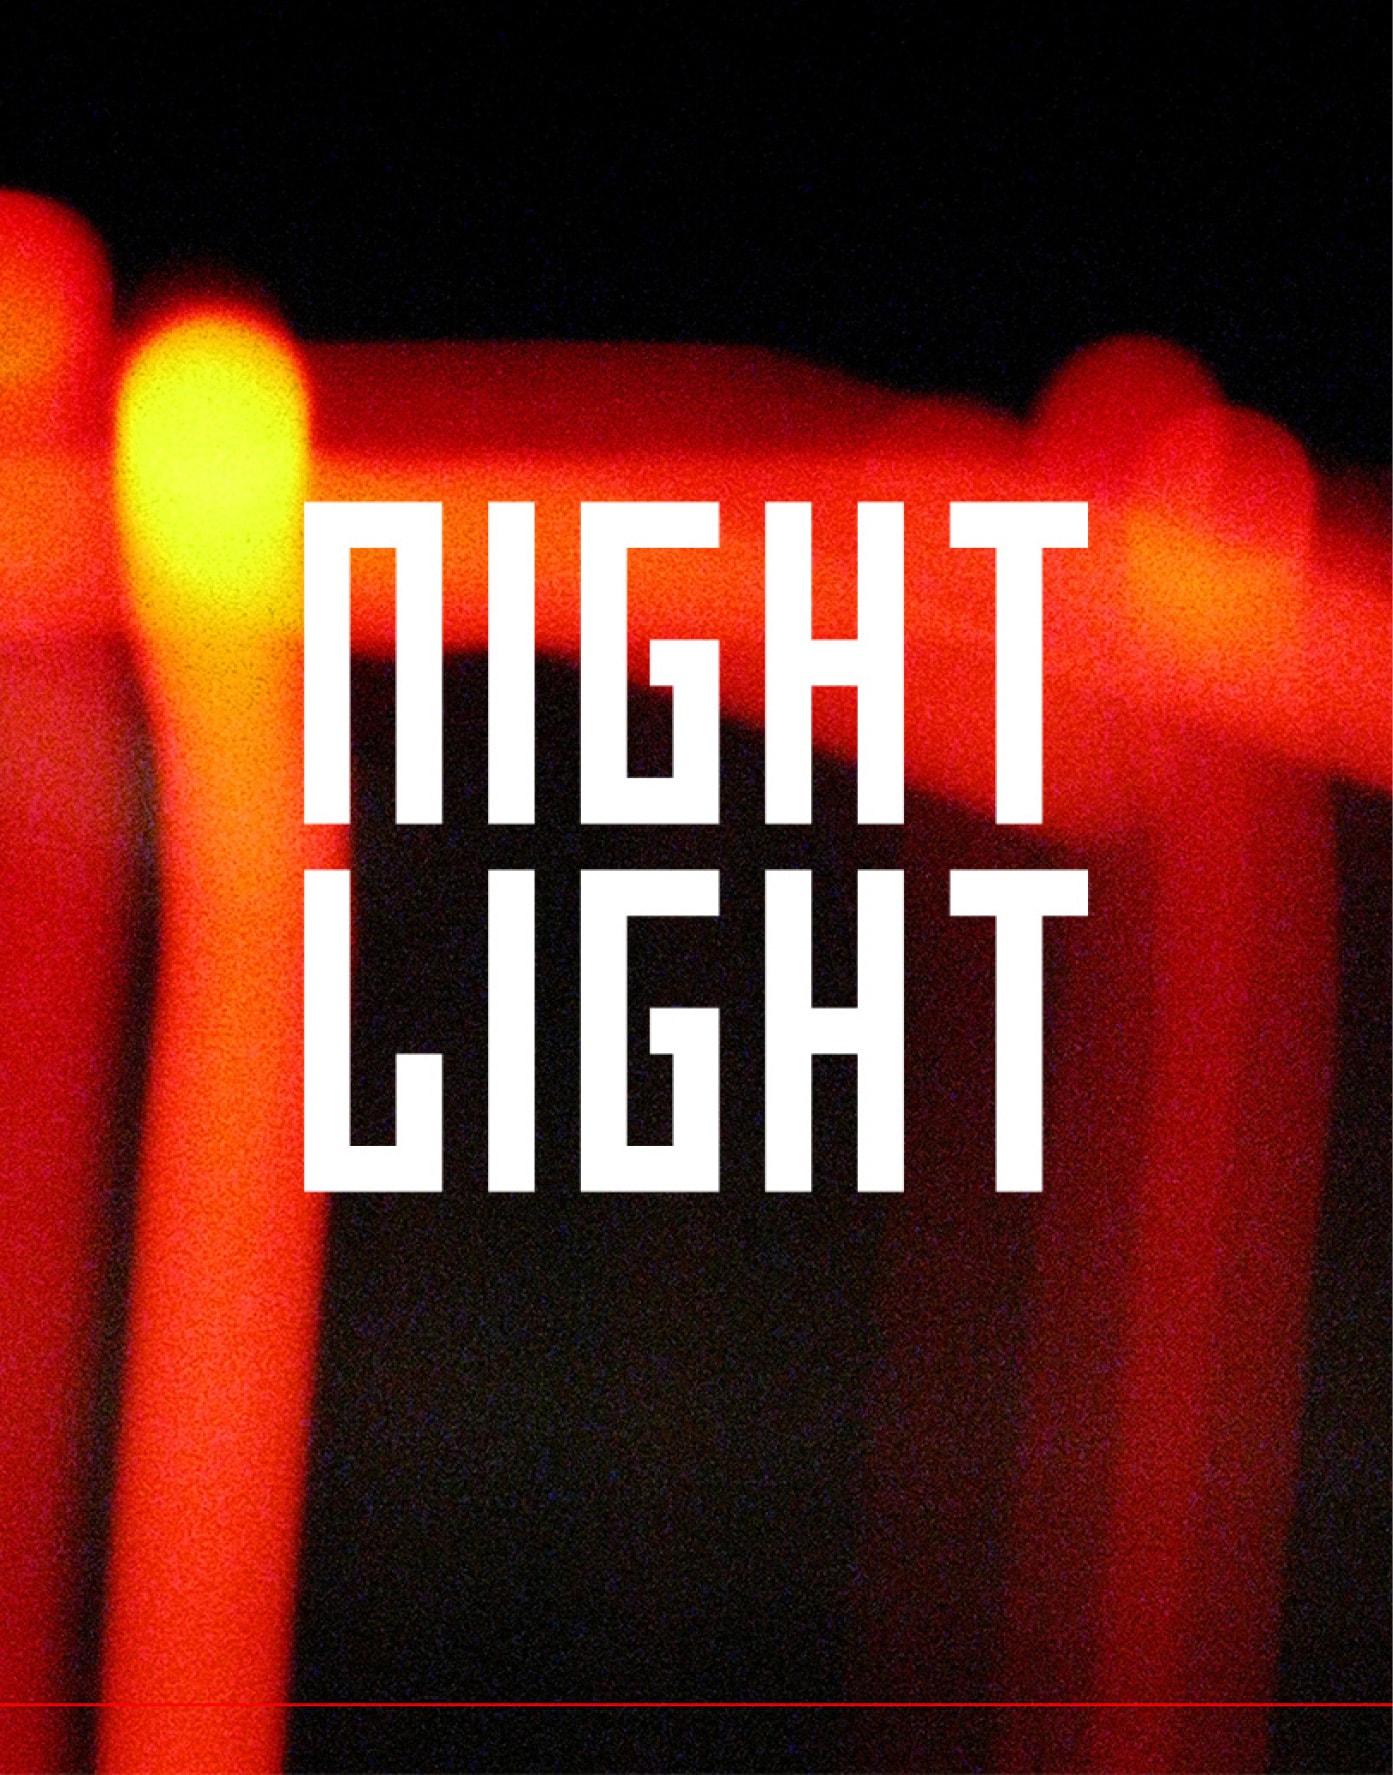 NIGHT LIGHT